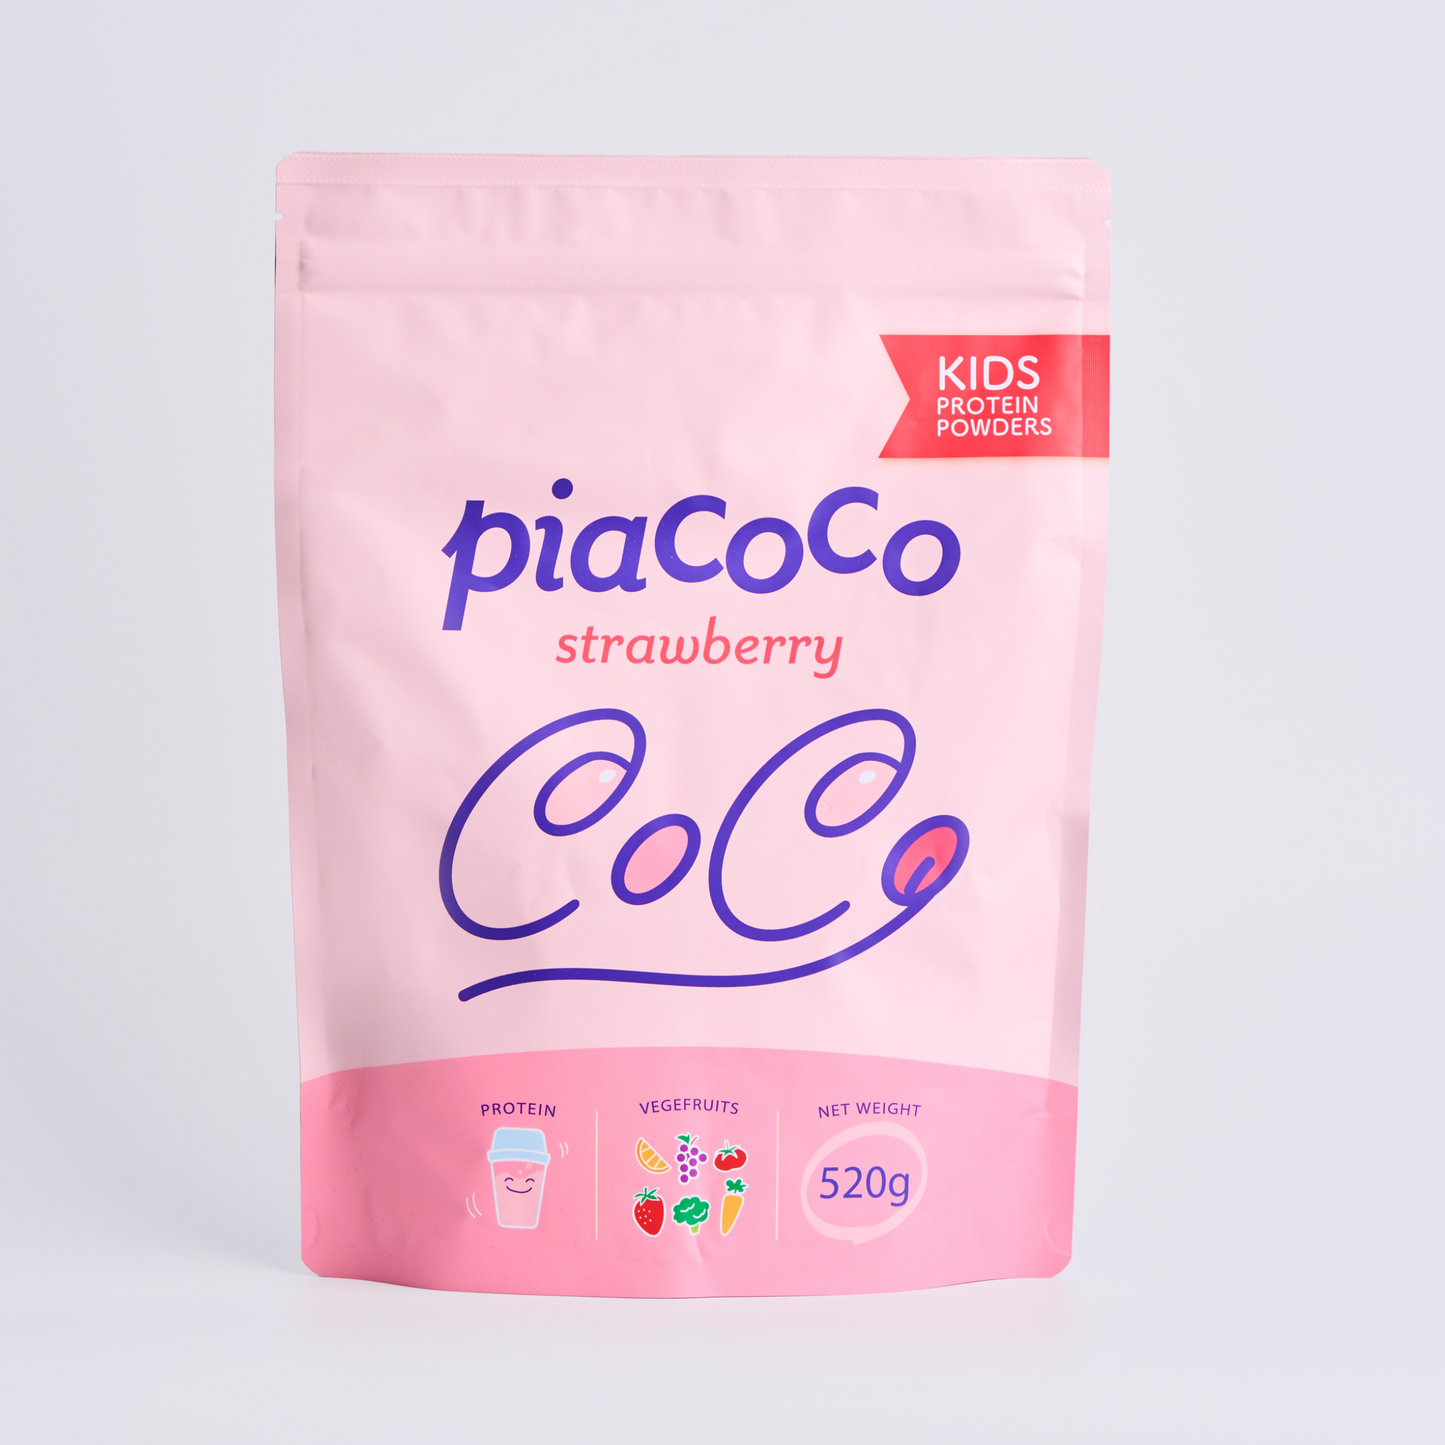 Pia cocoストロベリー味(520g)